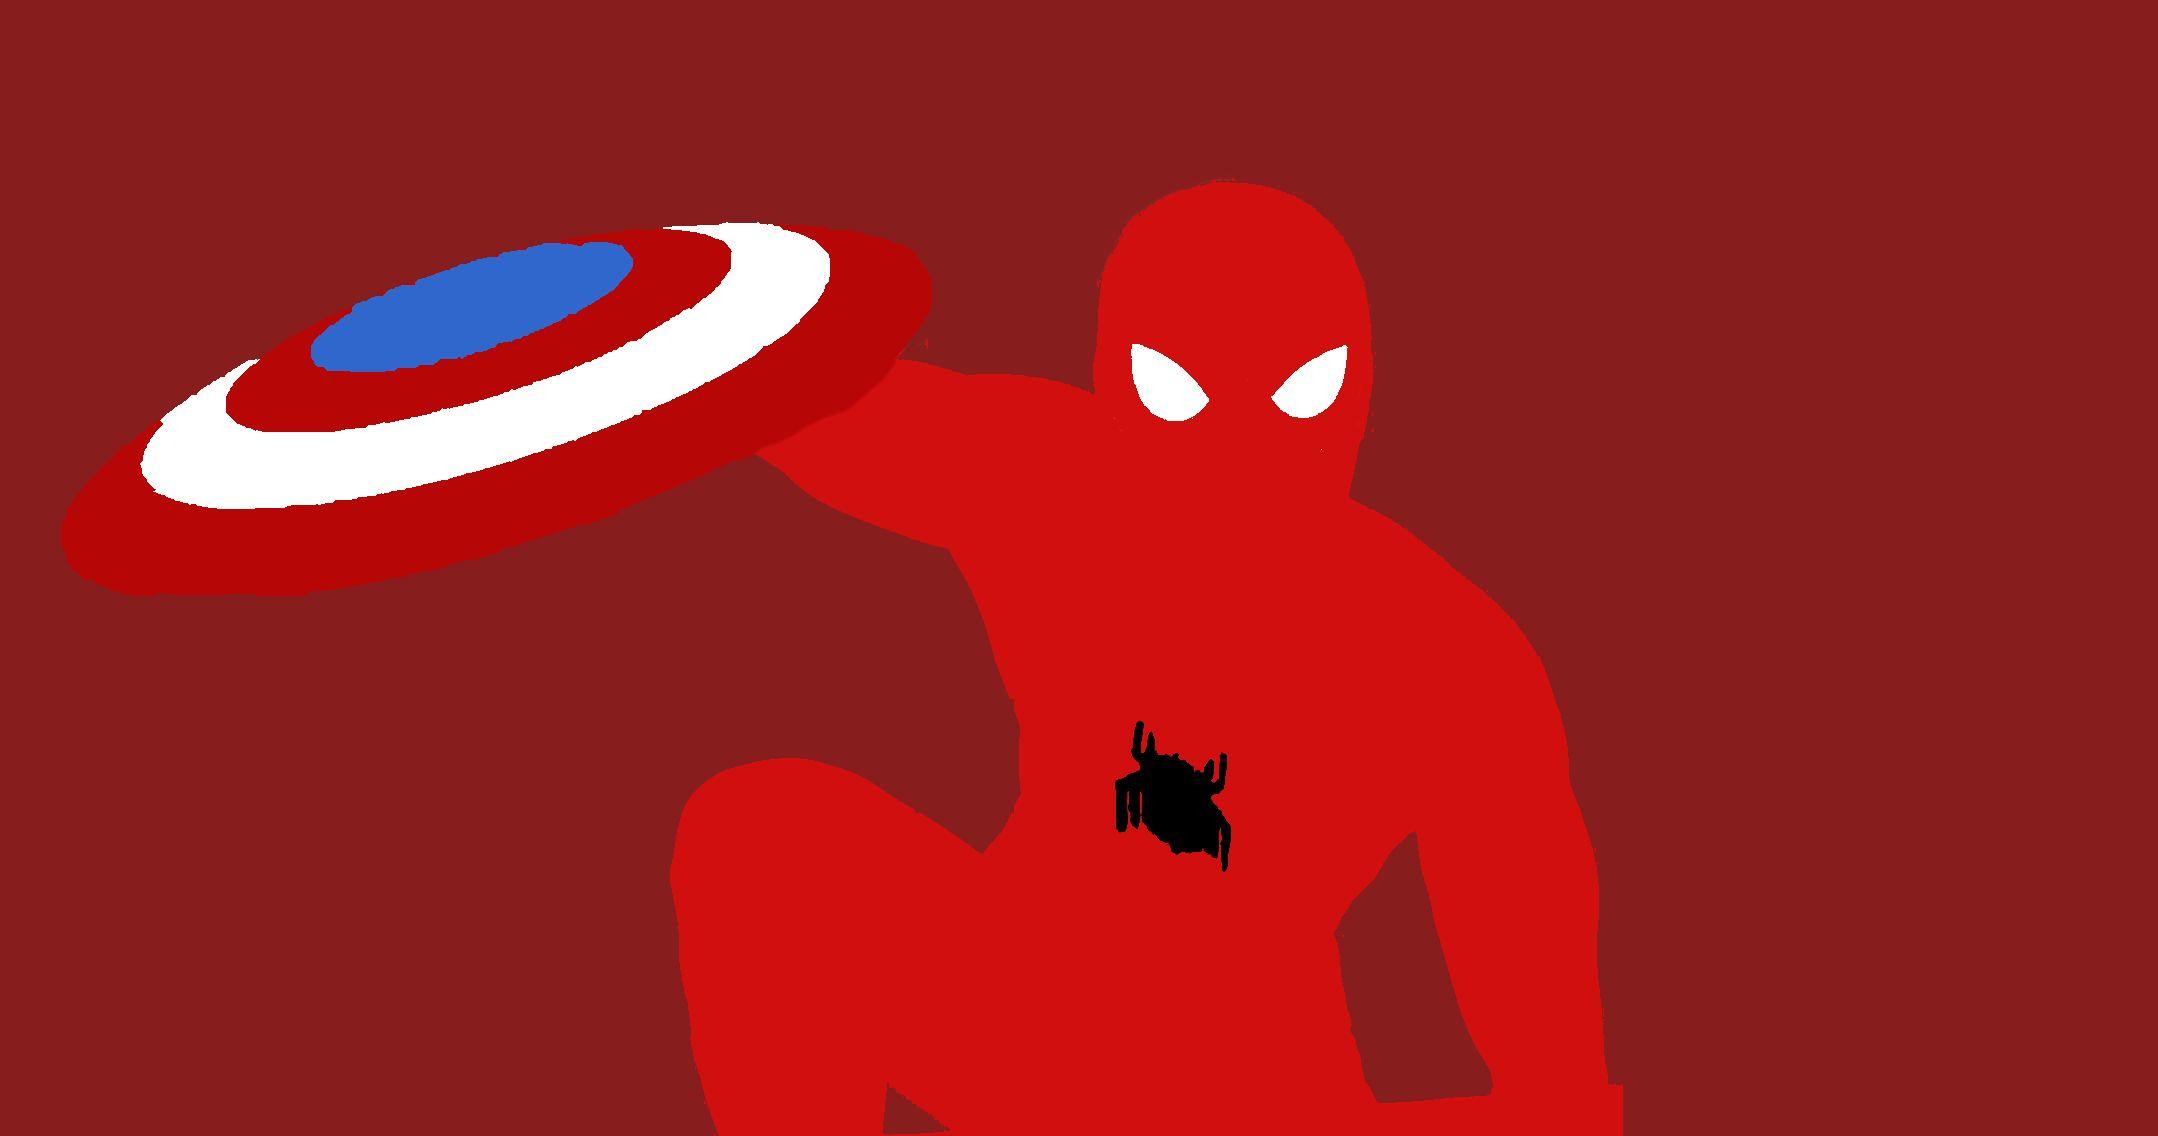 Minimalistic Spider Man (Civil War) Wallpaper